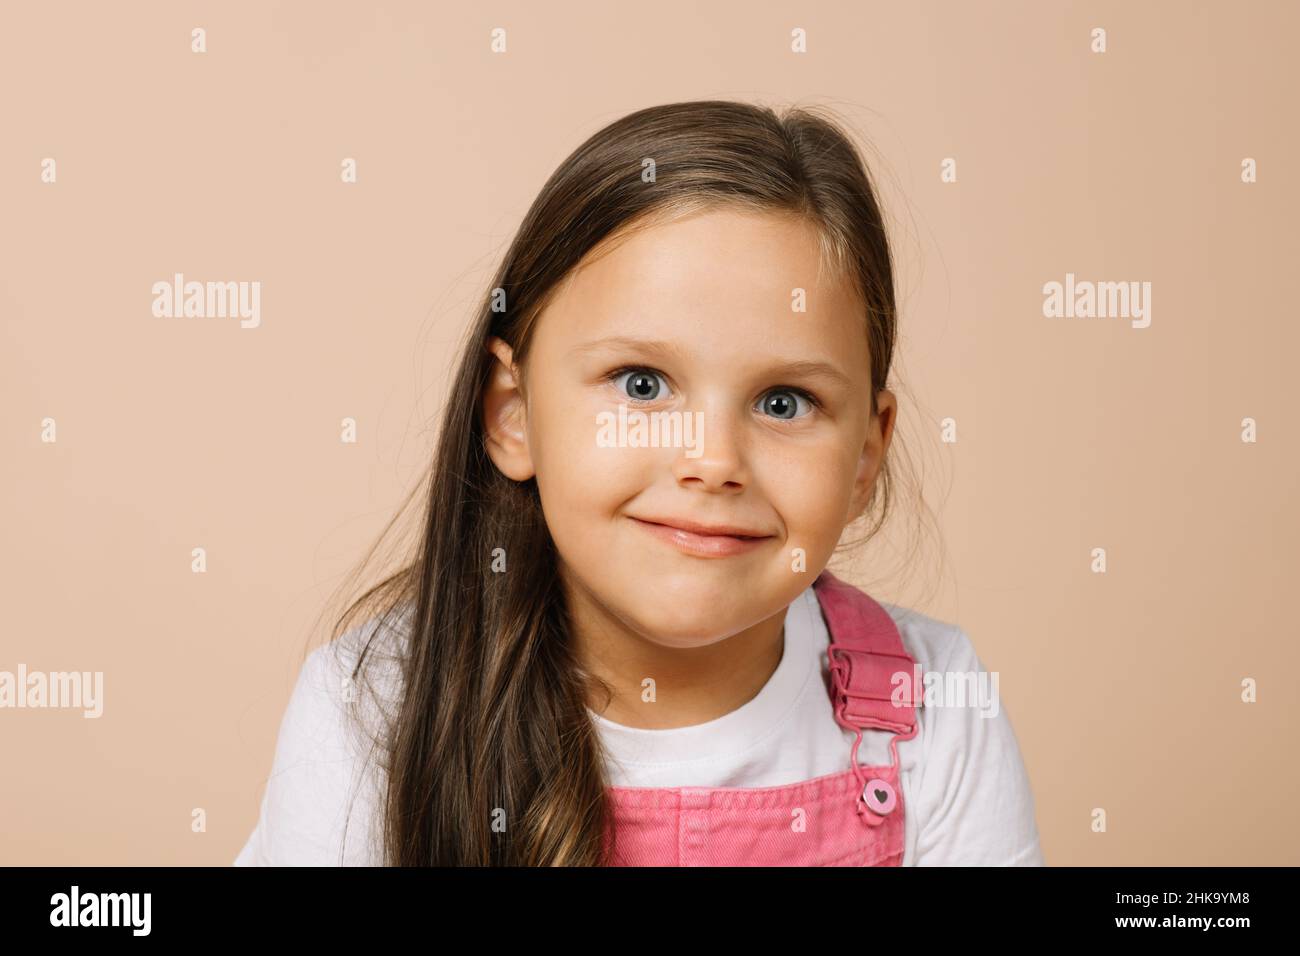 Ritratto del bambino con gli occhi luminosi leggermente gonfiati e sorriso beato guardando la macchina fotografica che indossa un tuta rosa brillante e una t-shirt bianca sul beige Foto Stock